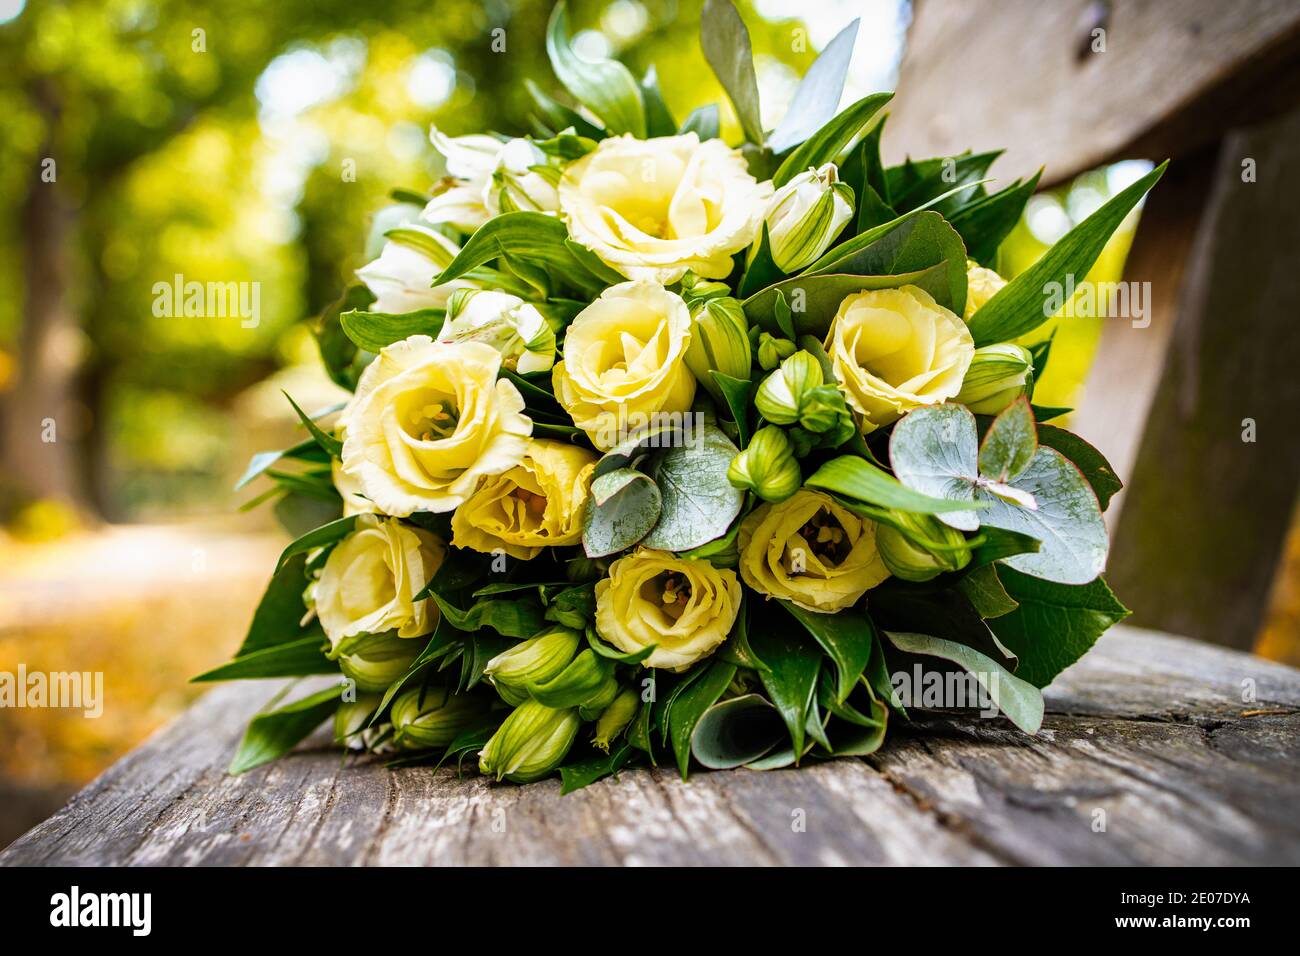 gelber Rosenstrauß Hochzeitsstrauß auf Holzbank Foto de stock